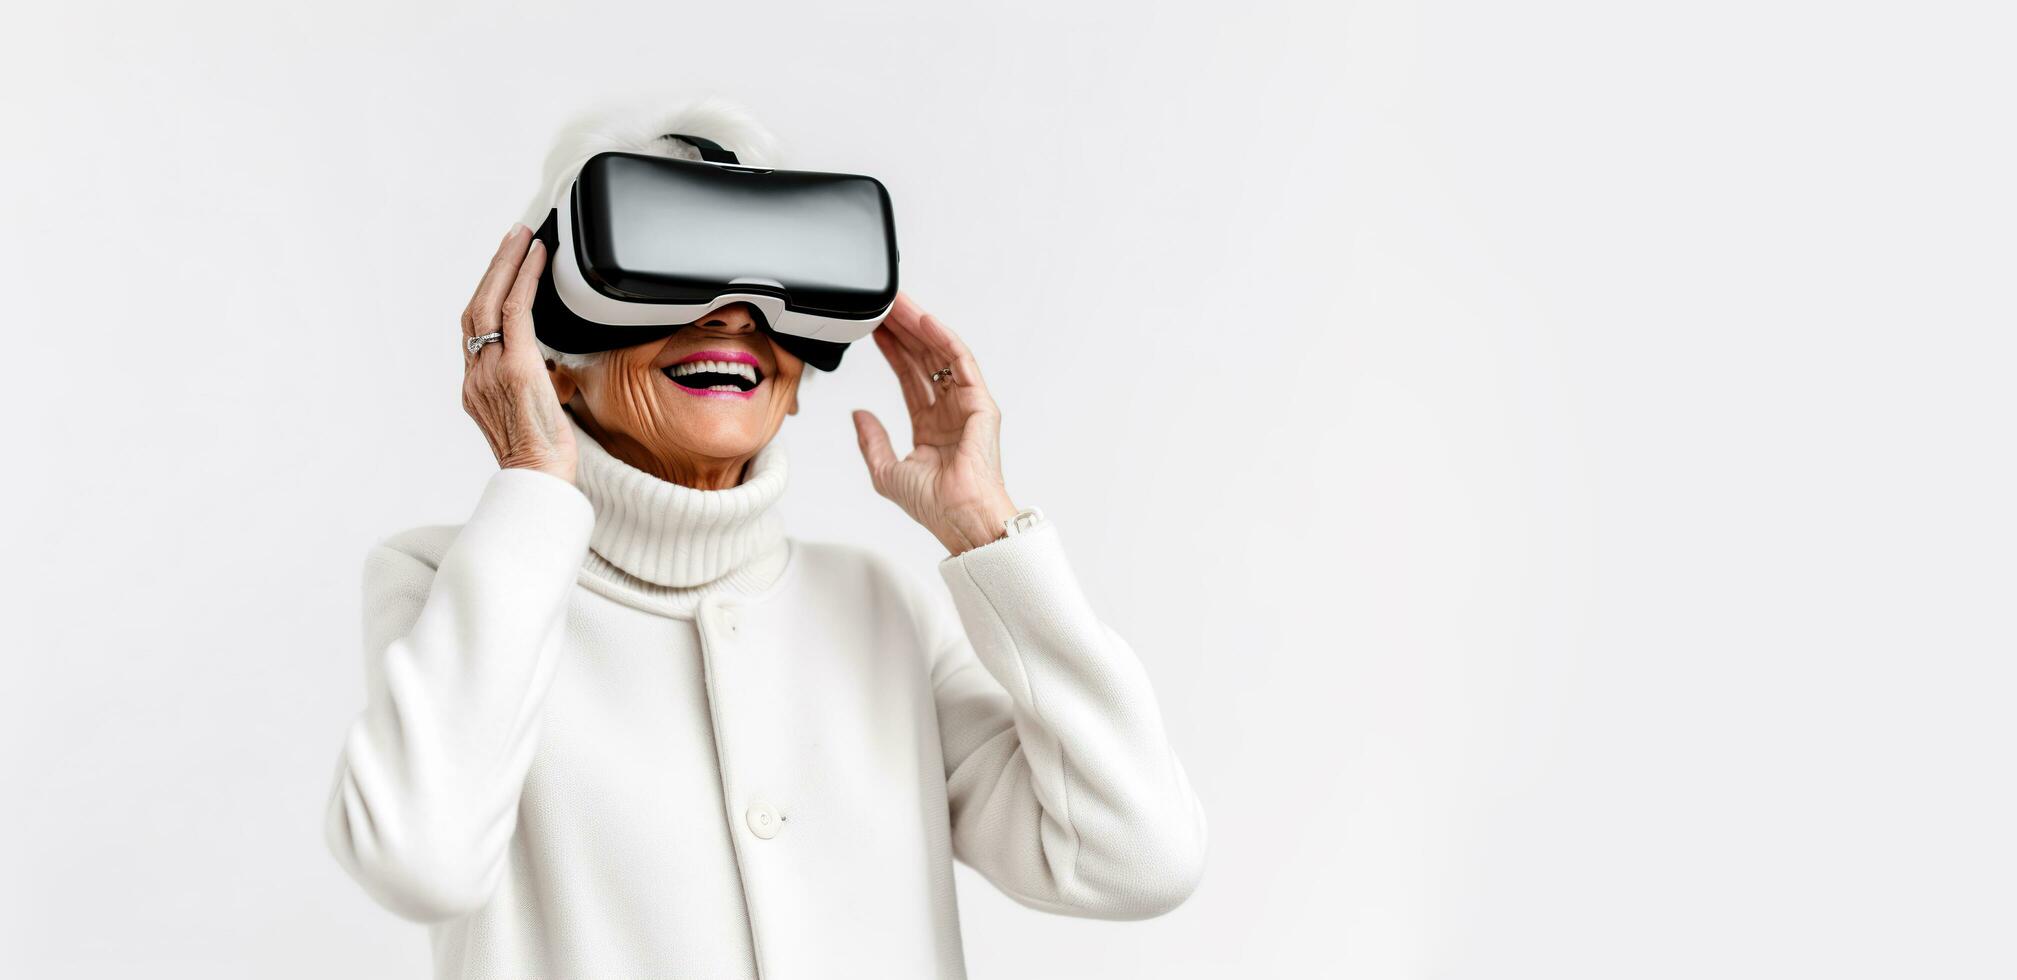 un plus âgée femme portant une blanc chandail et en train de regarder virtuel réalité casque photo